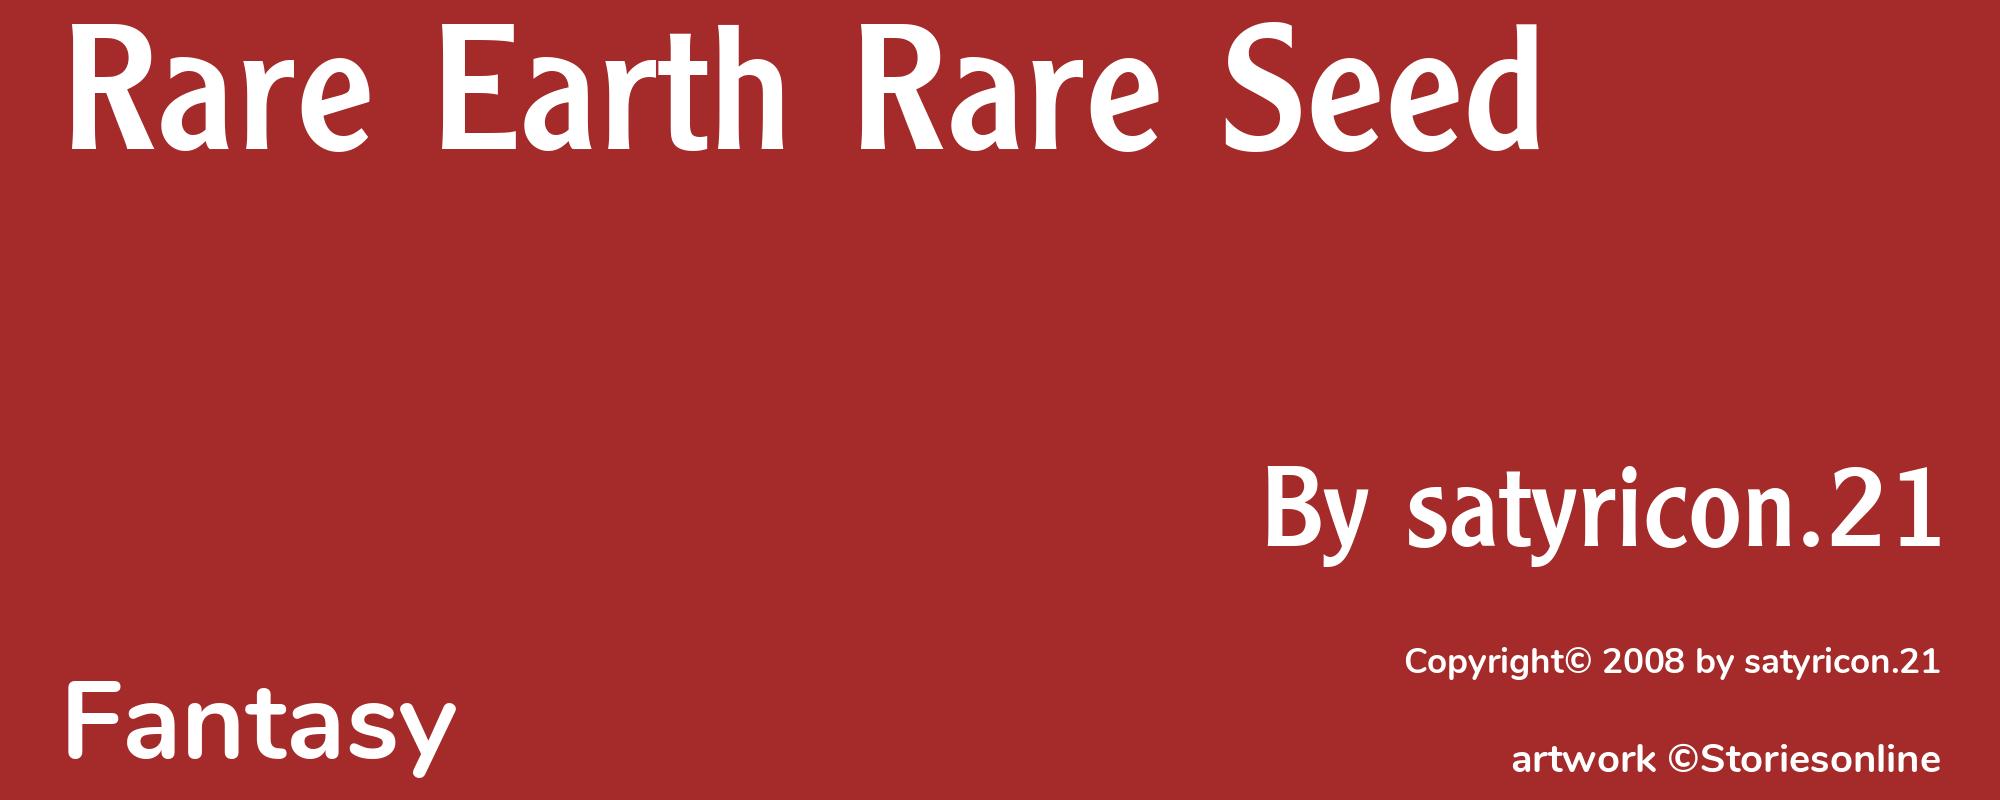 Rare Earth Rare Seed - Cover